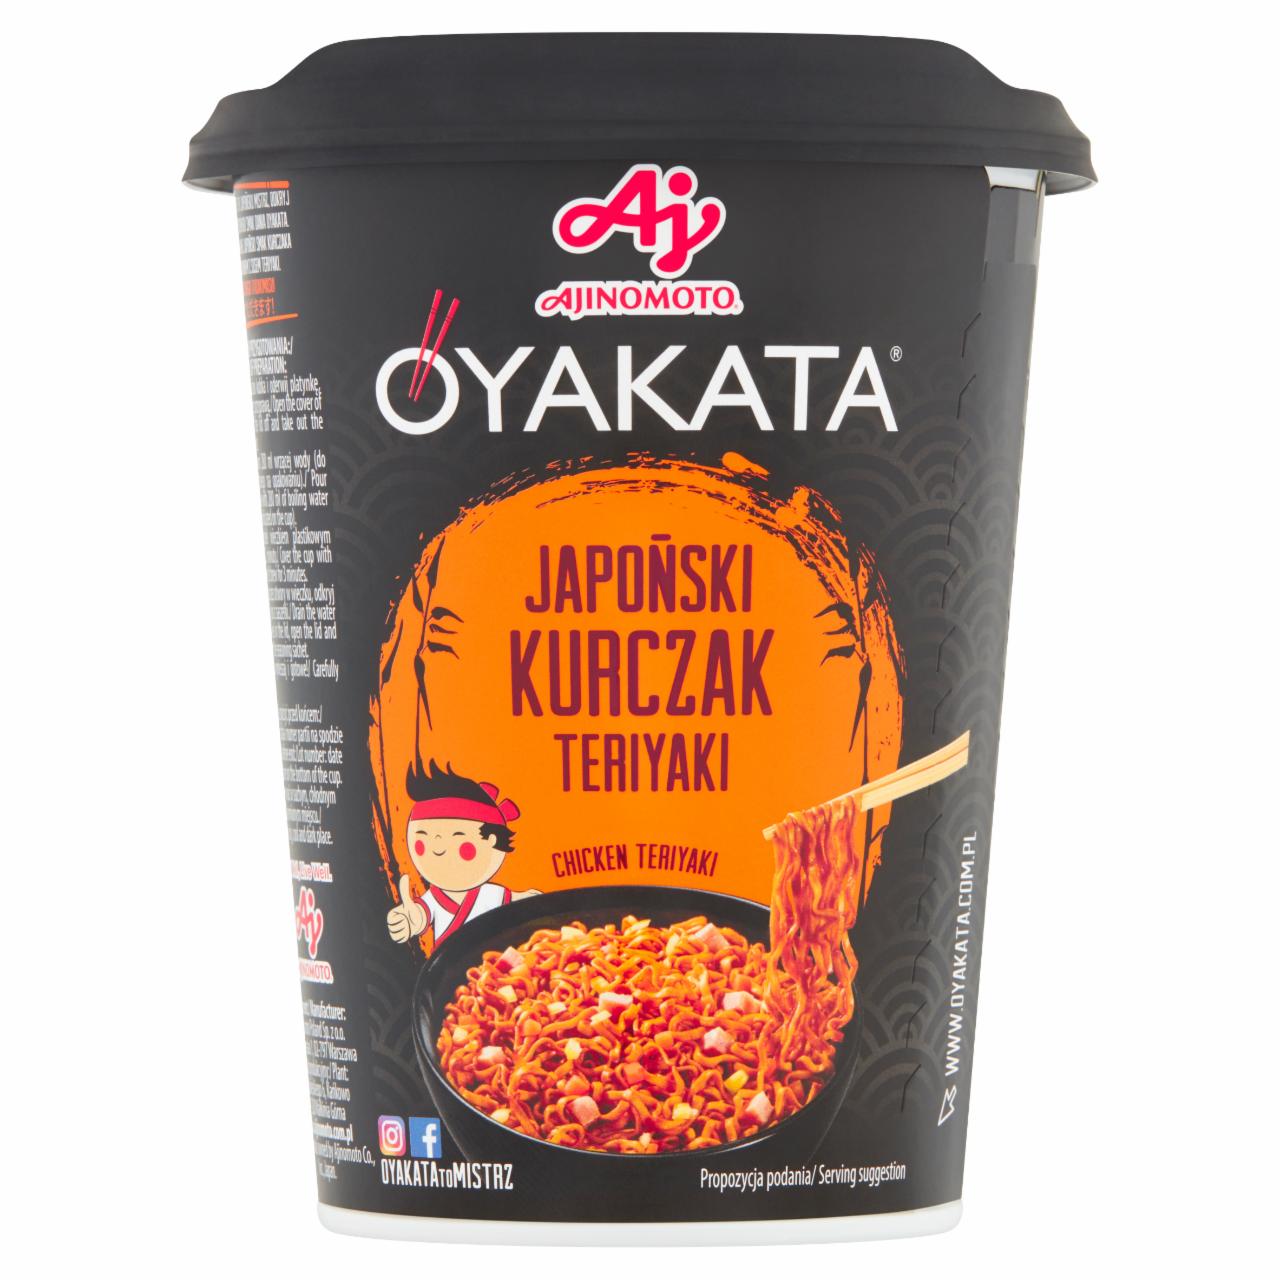 Zdjęcia - Danie instant z sosem w stylu japoński kurczak teriyaki 96 g OYAKATA